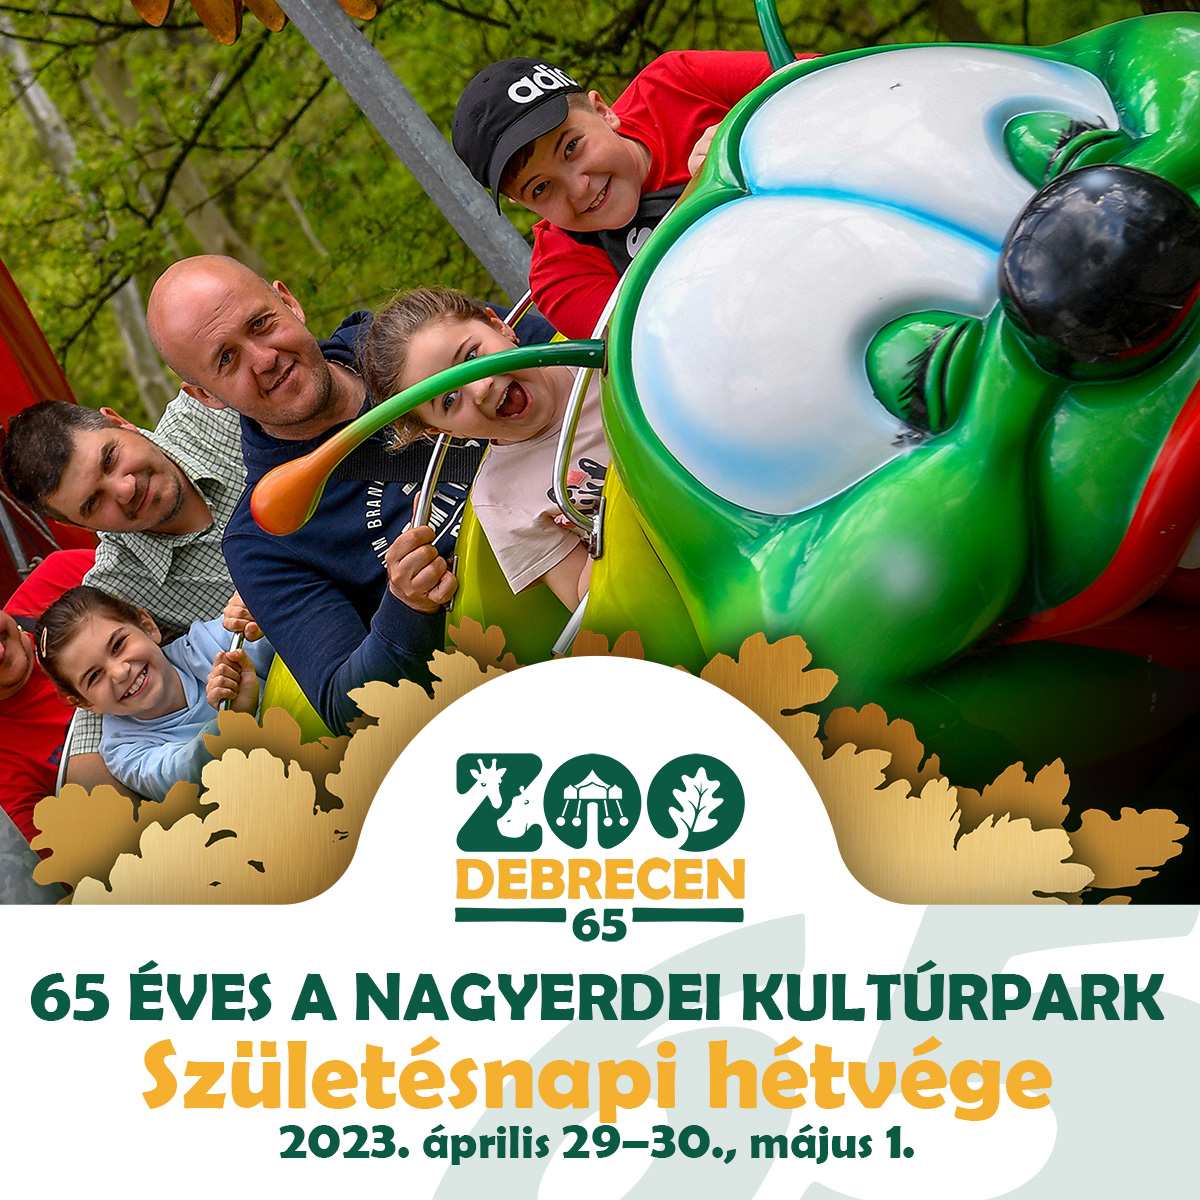 Háromnapos főszezonnyitó majálissal ünnepli 65. születésnapját a Zoo Debrecen! Háromnapos főszezonnyitó majálissal ünnepli 65. születésnapját a Zoo Debrecen! | Online Rádió - Egy Lépéssel Közelebb Hozzád! _ LépésRádió